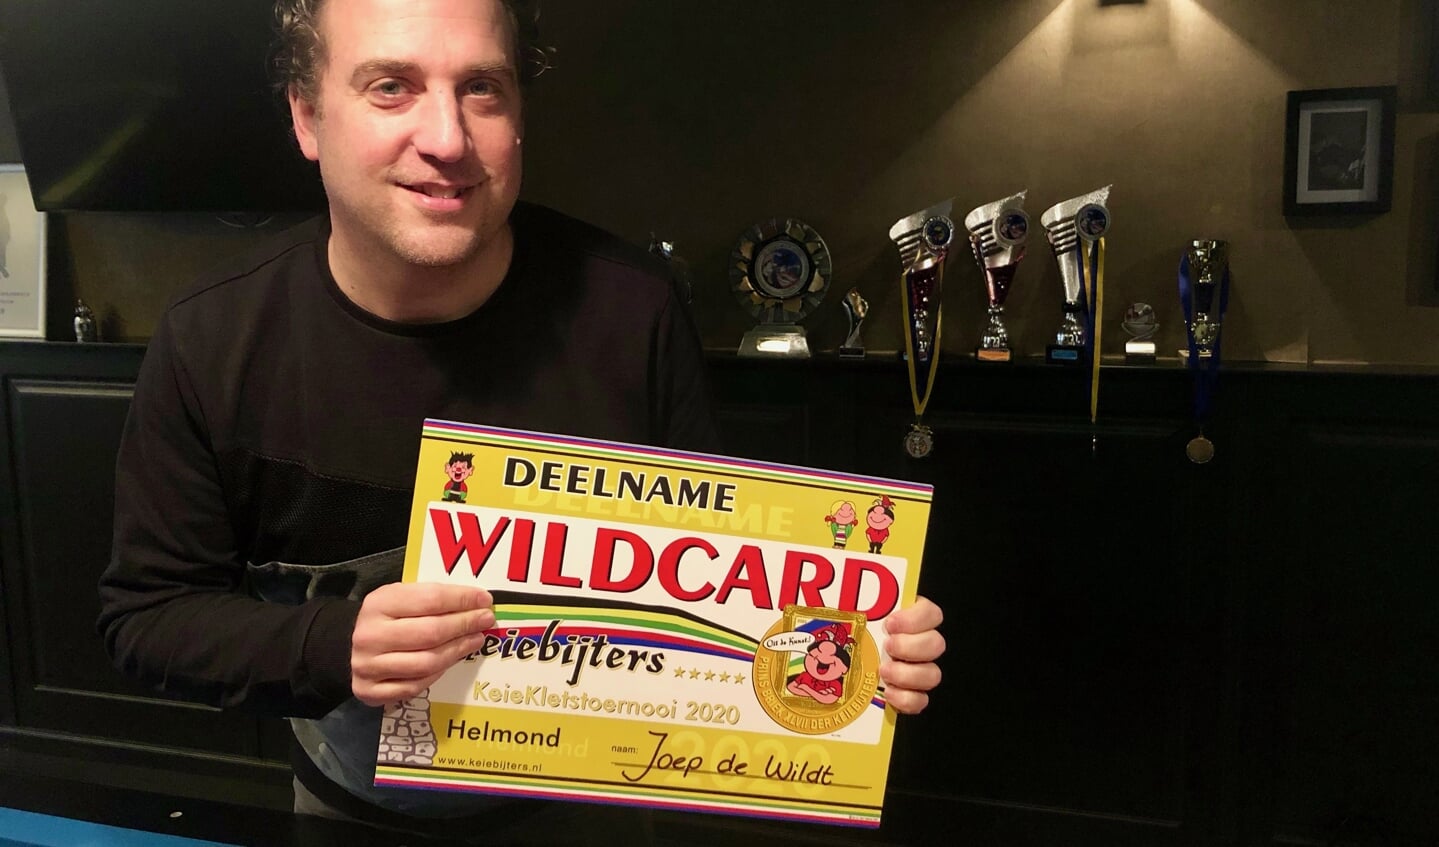 Vol trots toont Joep de Wildt zijn wildcard voor de Keiebijters. Foto: Johan Wagenmakers